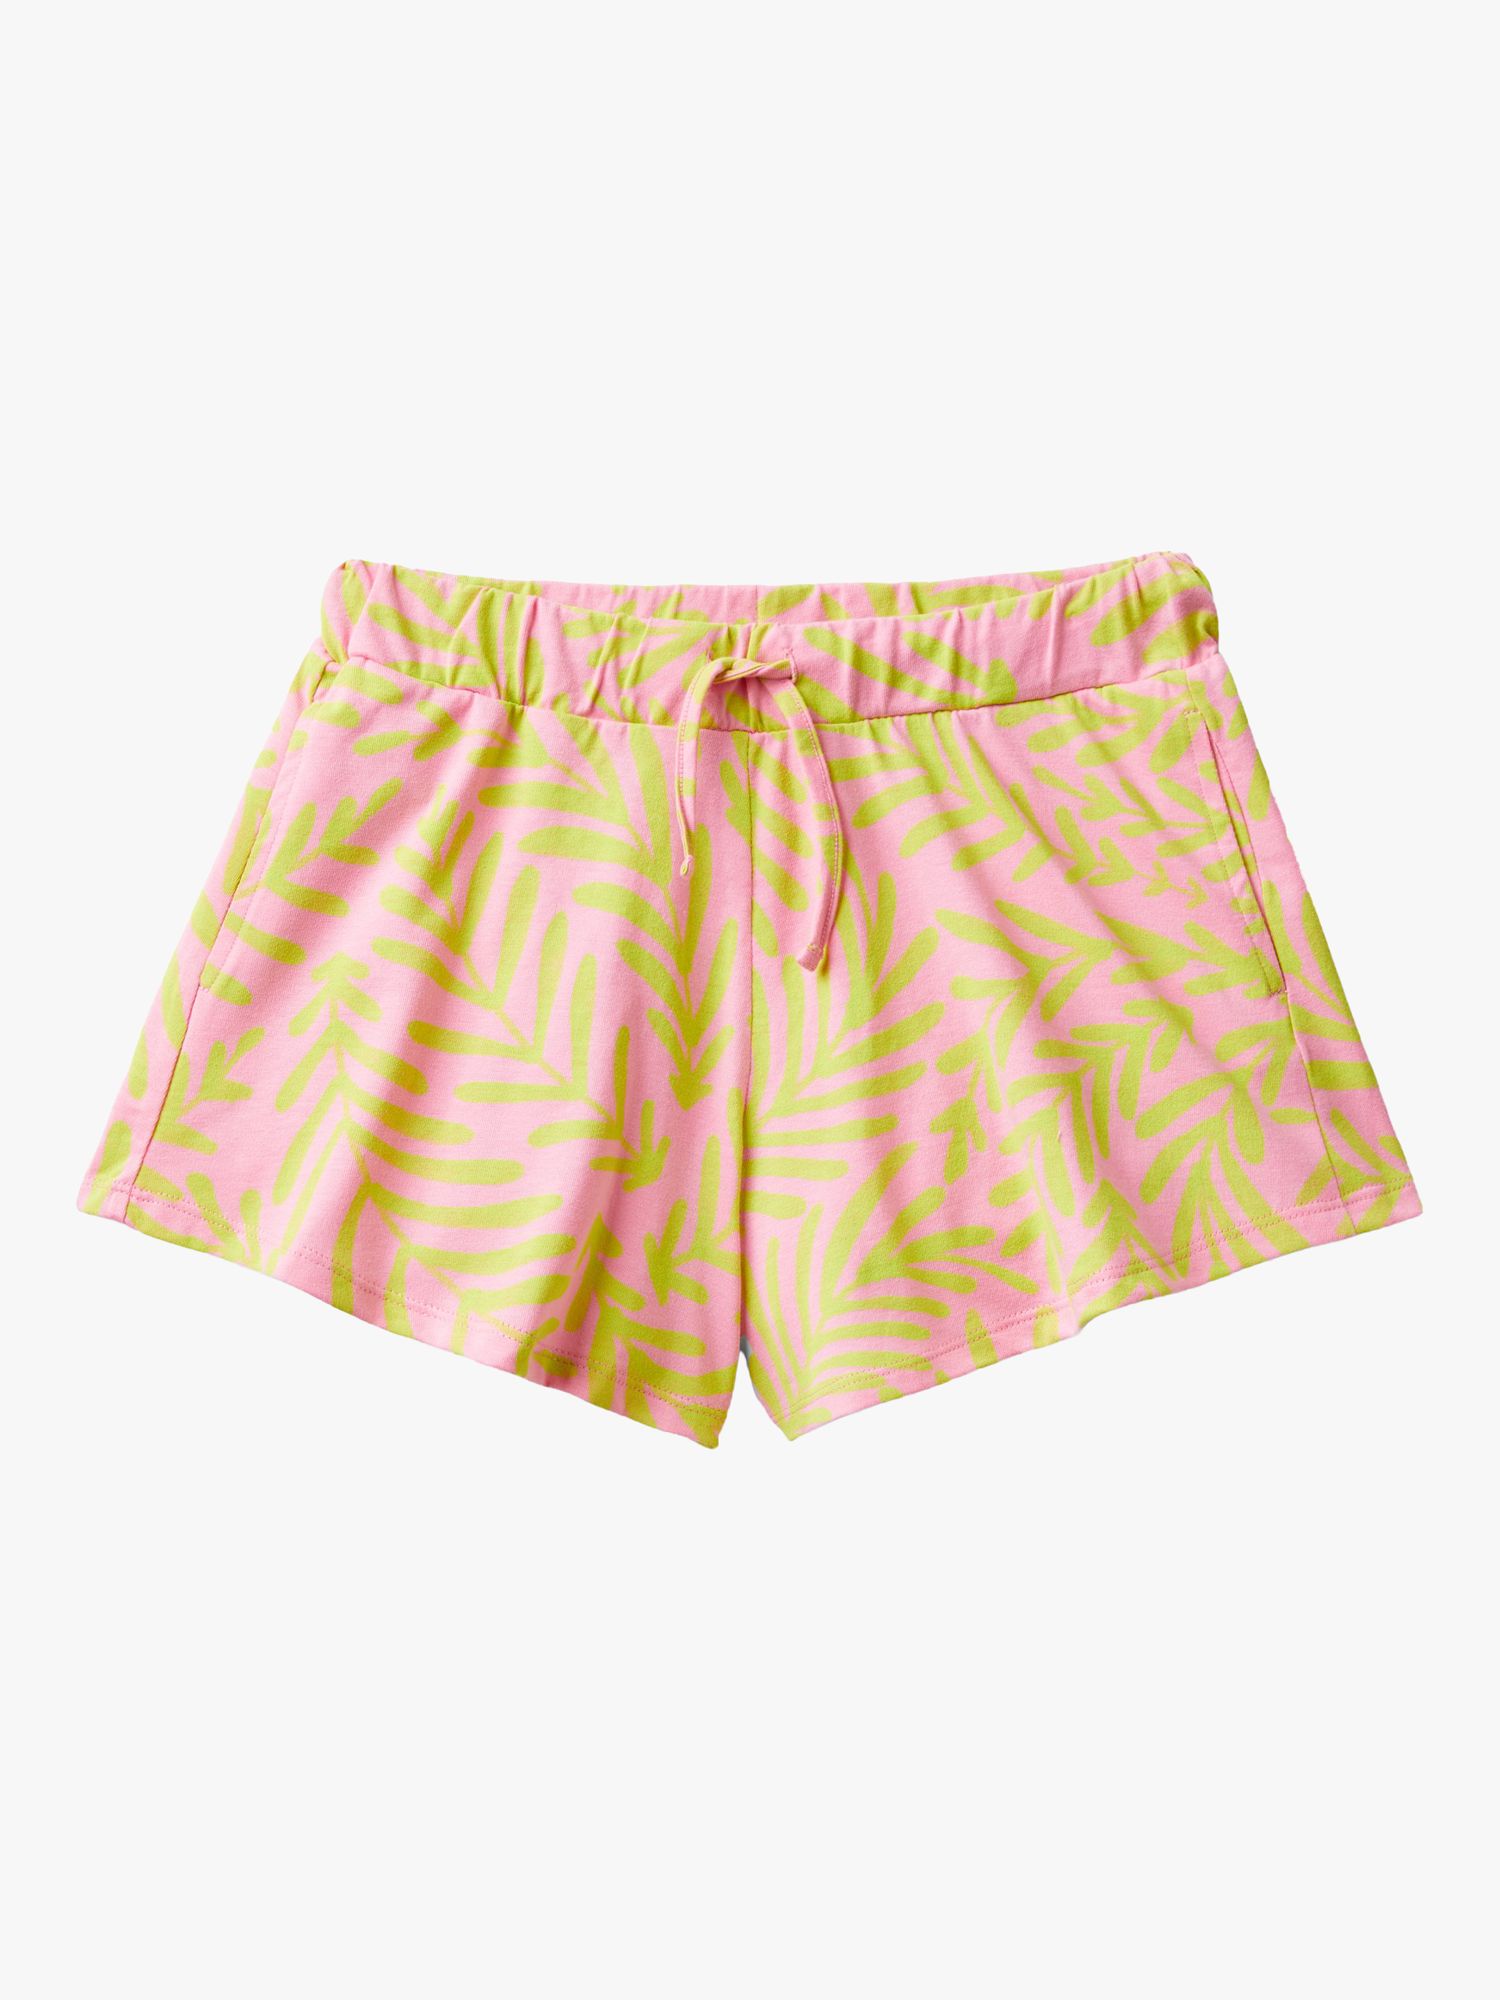 Benetton Kids' Leaf Print Drawstring Shorts, Pink/Multi, 6-7 years